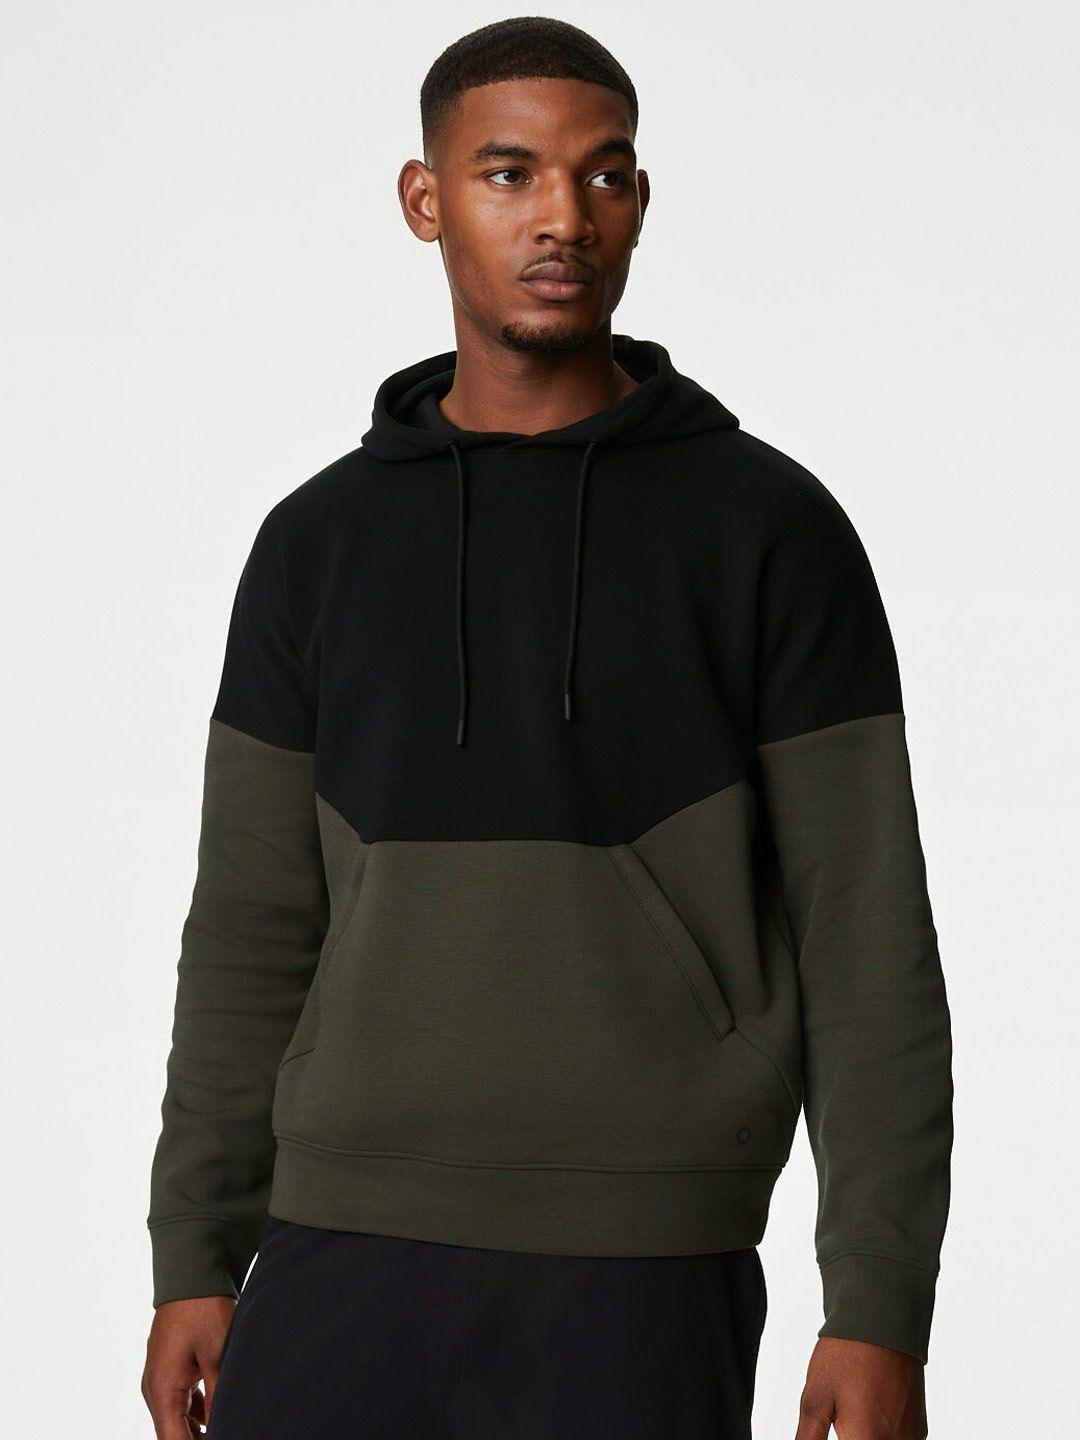 marks & spencer colourblocked hooded pullover sweatshirt